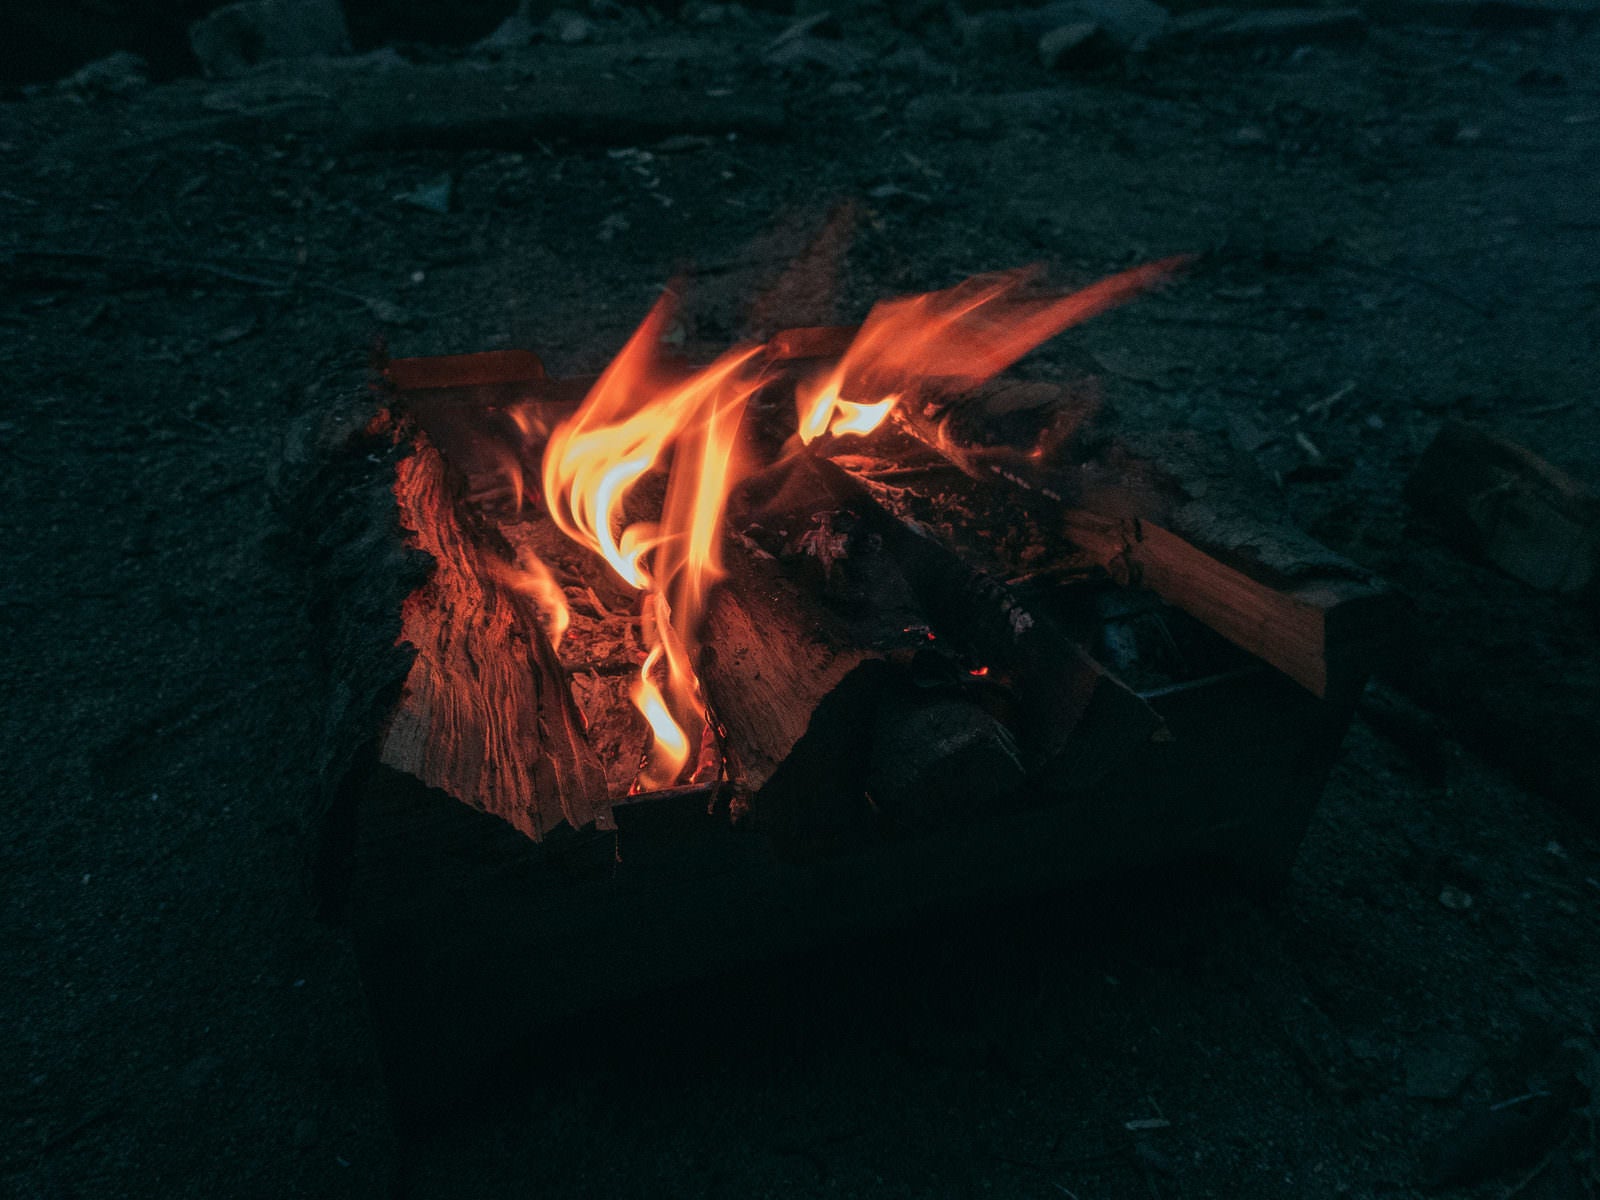 「暗がりに灯る焚き火の炎」の写真